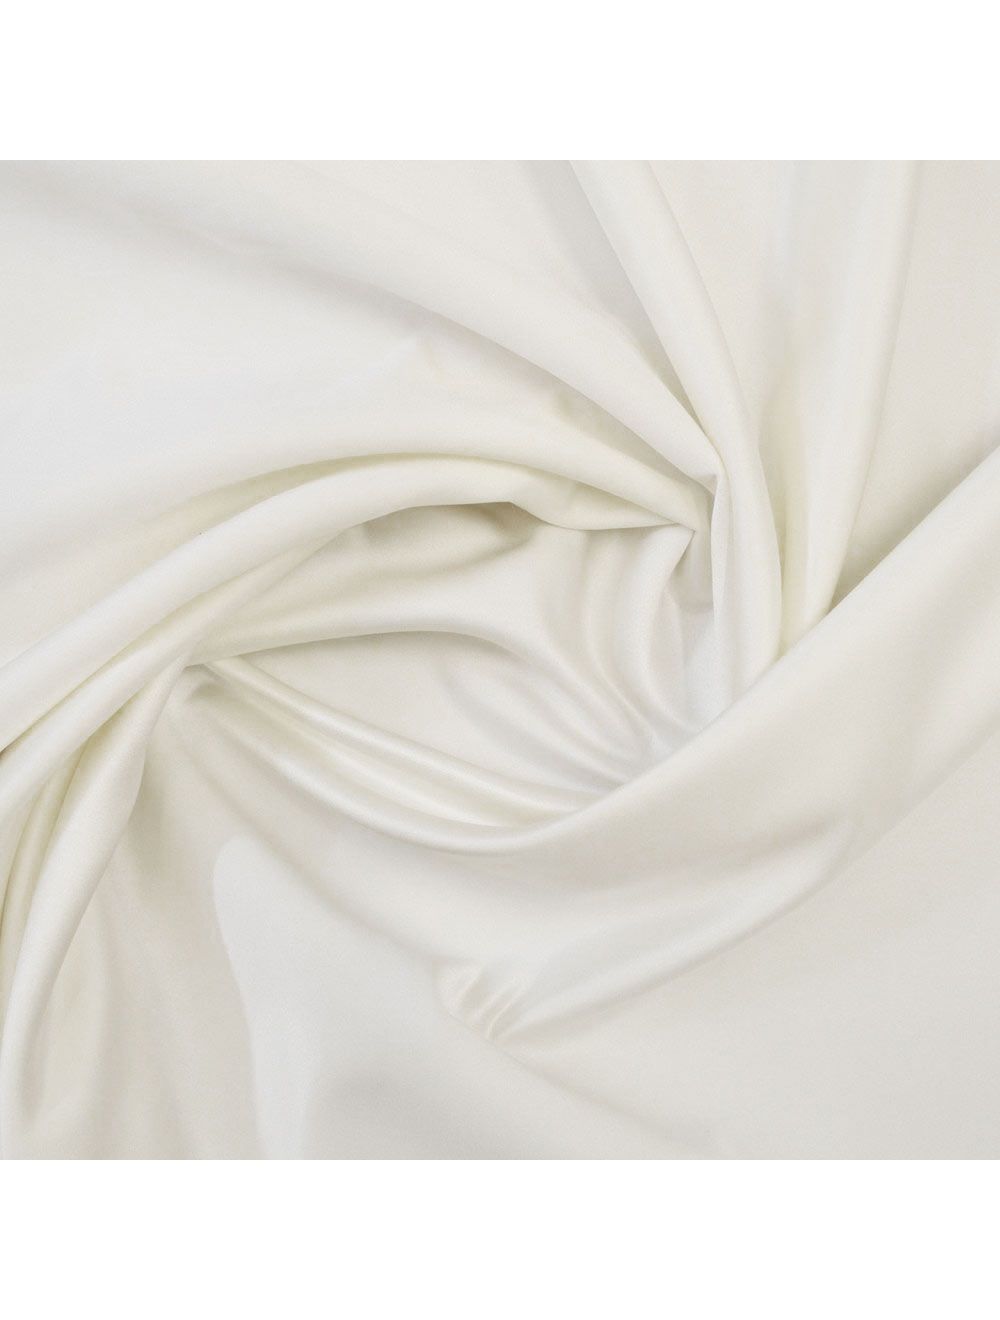 Cream Duchess Satin Fabric | Duchess Satin Fabrics | Calico Laine